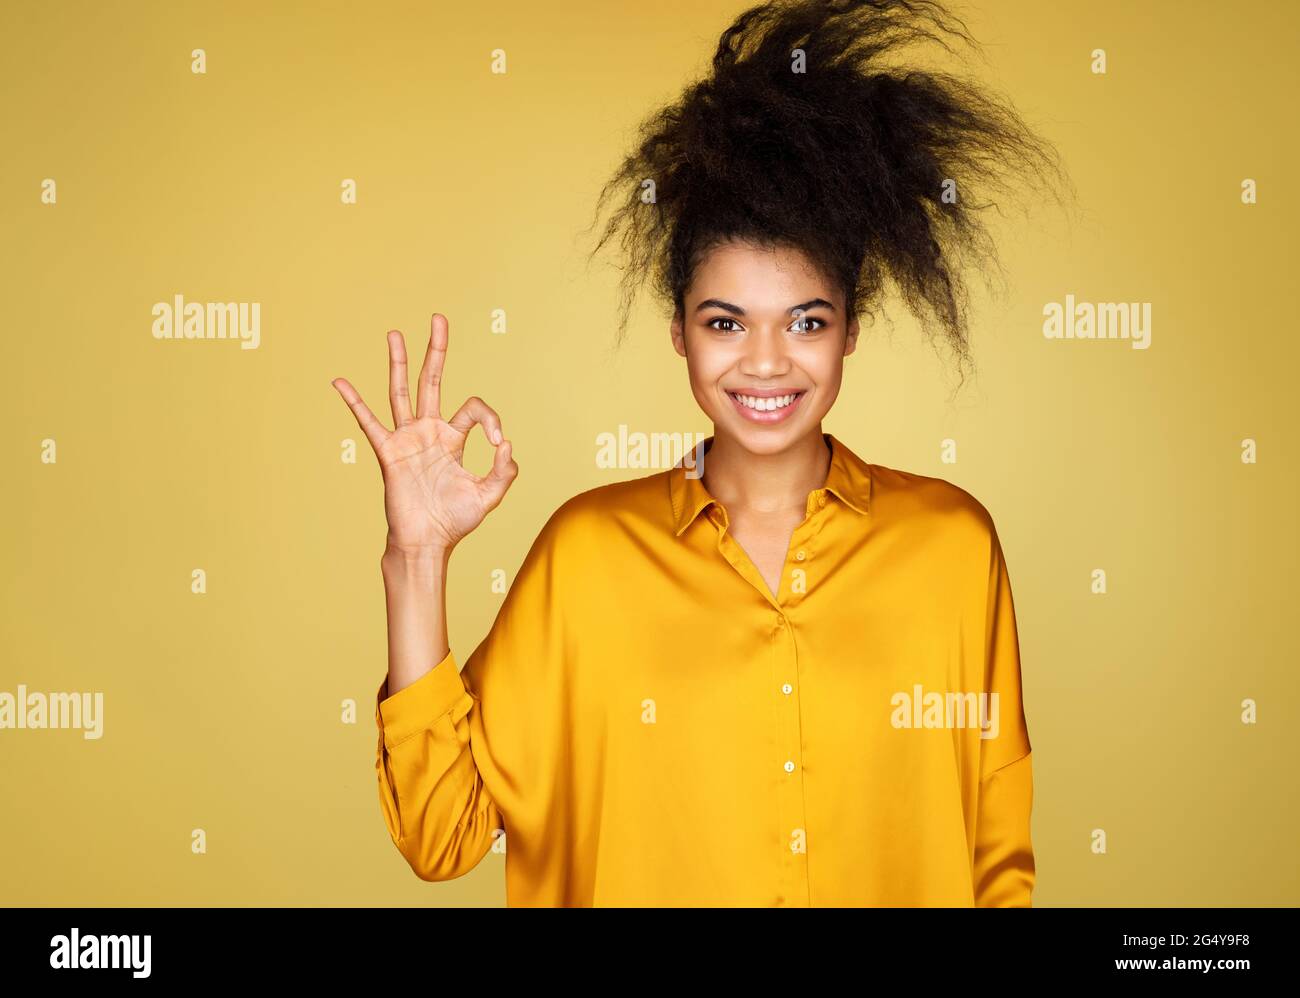 Junges Mädchen sagt gute Arbeit oder gut gemacht, macht okay Geste. Foto von afroamerikanischen Mädchen auf gelbem Hintergrund Stockfoto